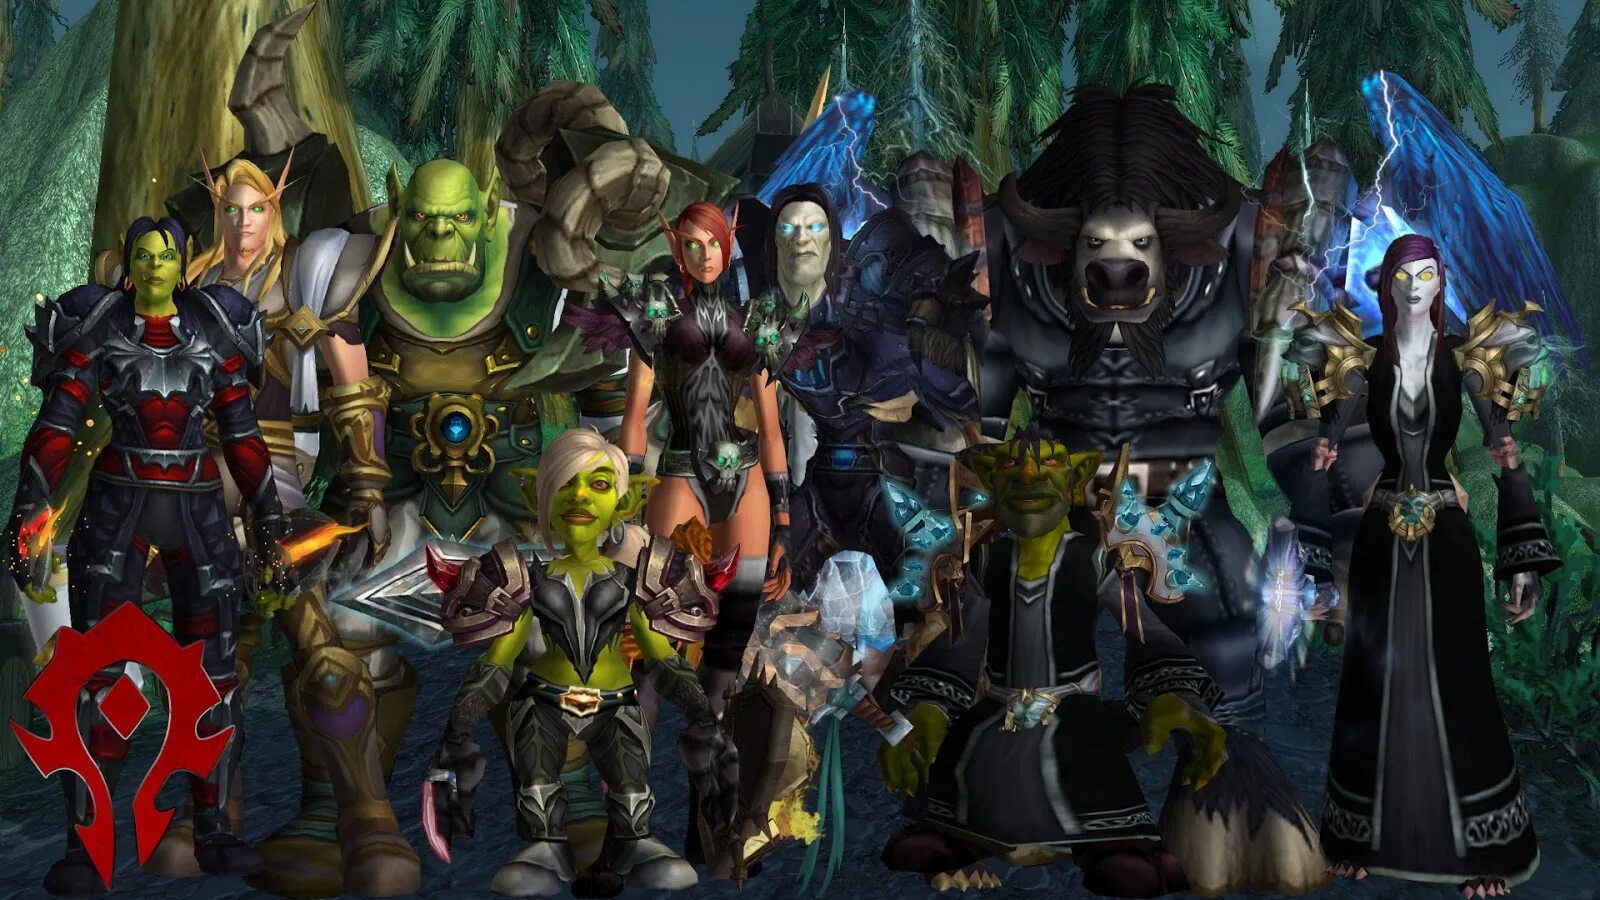 Герои ворлд. Варкрафт персонажи игры Орда. Альянс варкрафт персонажи. Варкрафт Орда и Альянс. World of Warcraft Орда.